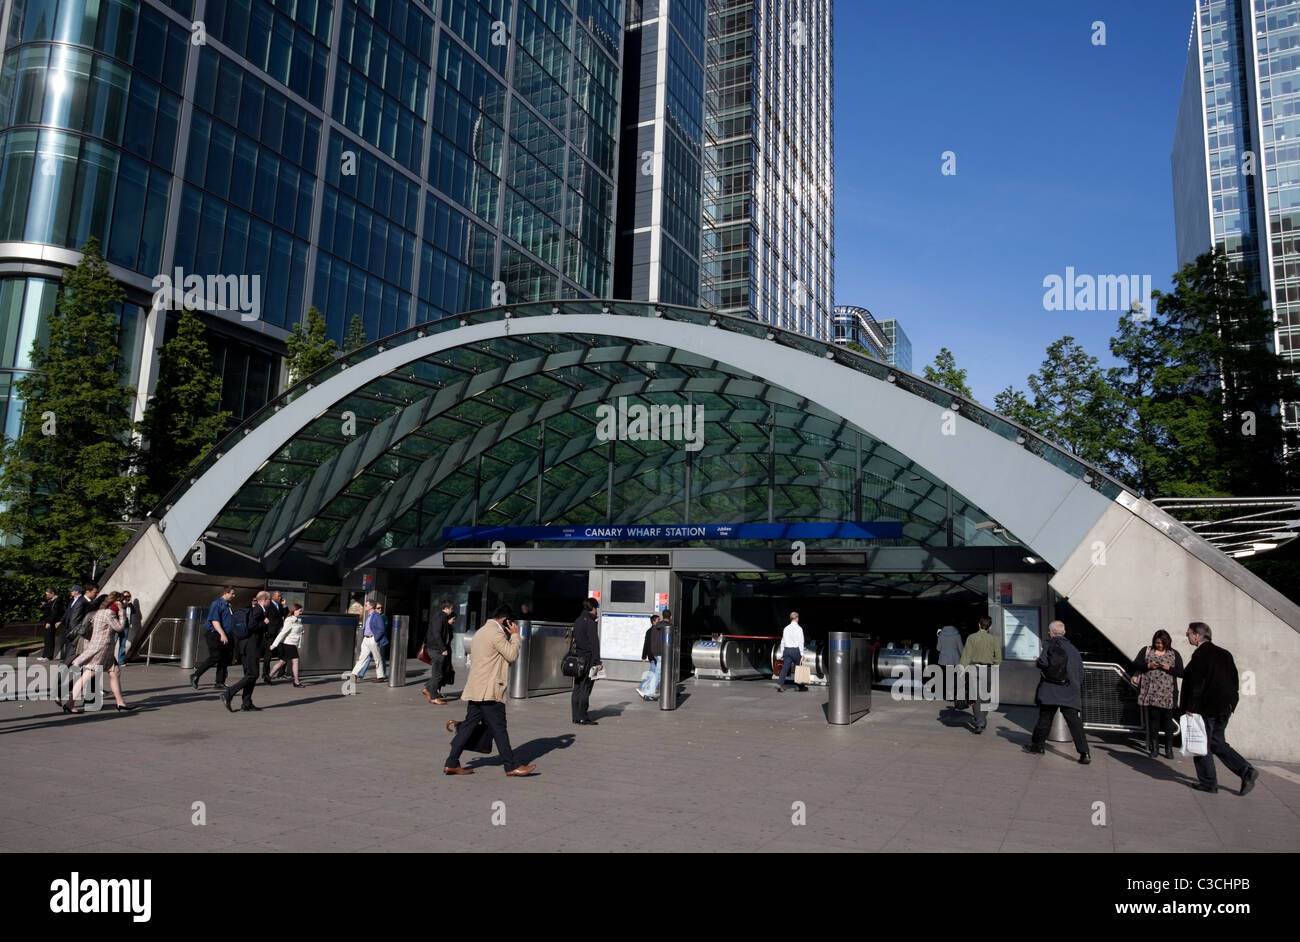 La station de métro Canary Wharf, London, England, UK Banque D'Images